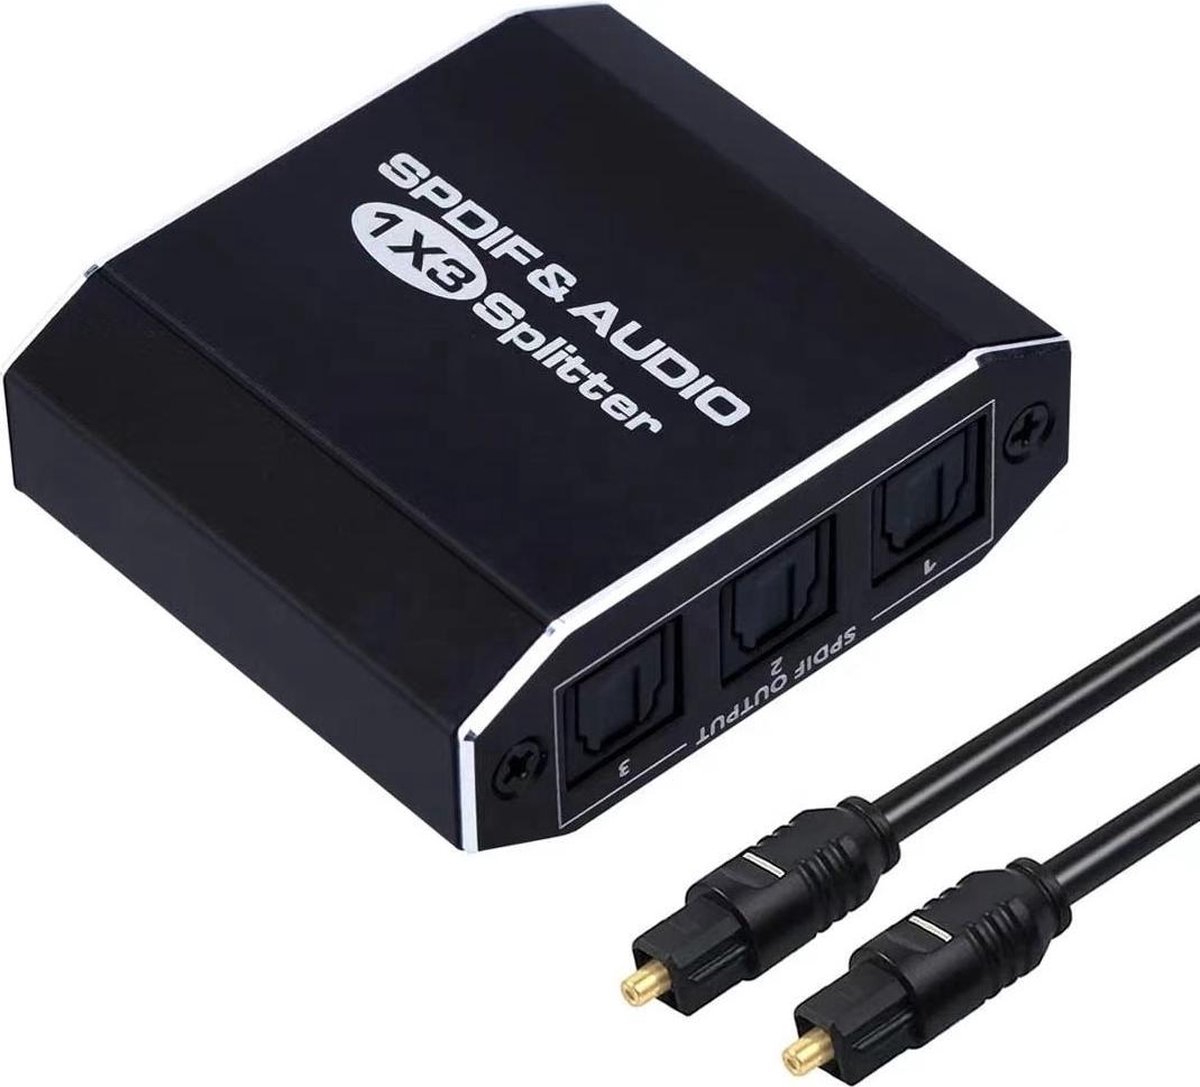 NÖRDIC SGM-144 SPDIF digitale optische audio switch - 3 naar 1 - Met  TOSLINK-kabel - Zwart | bol.com